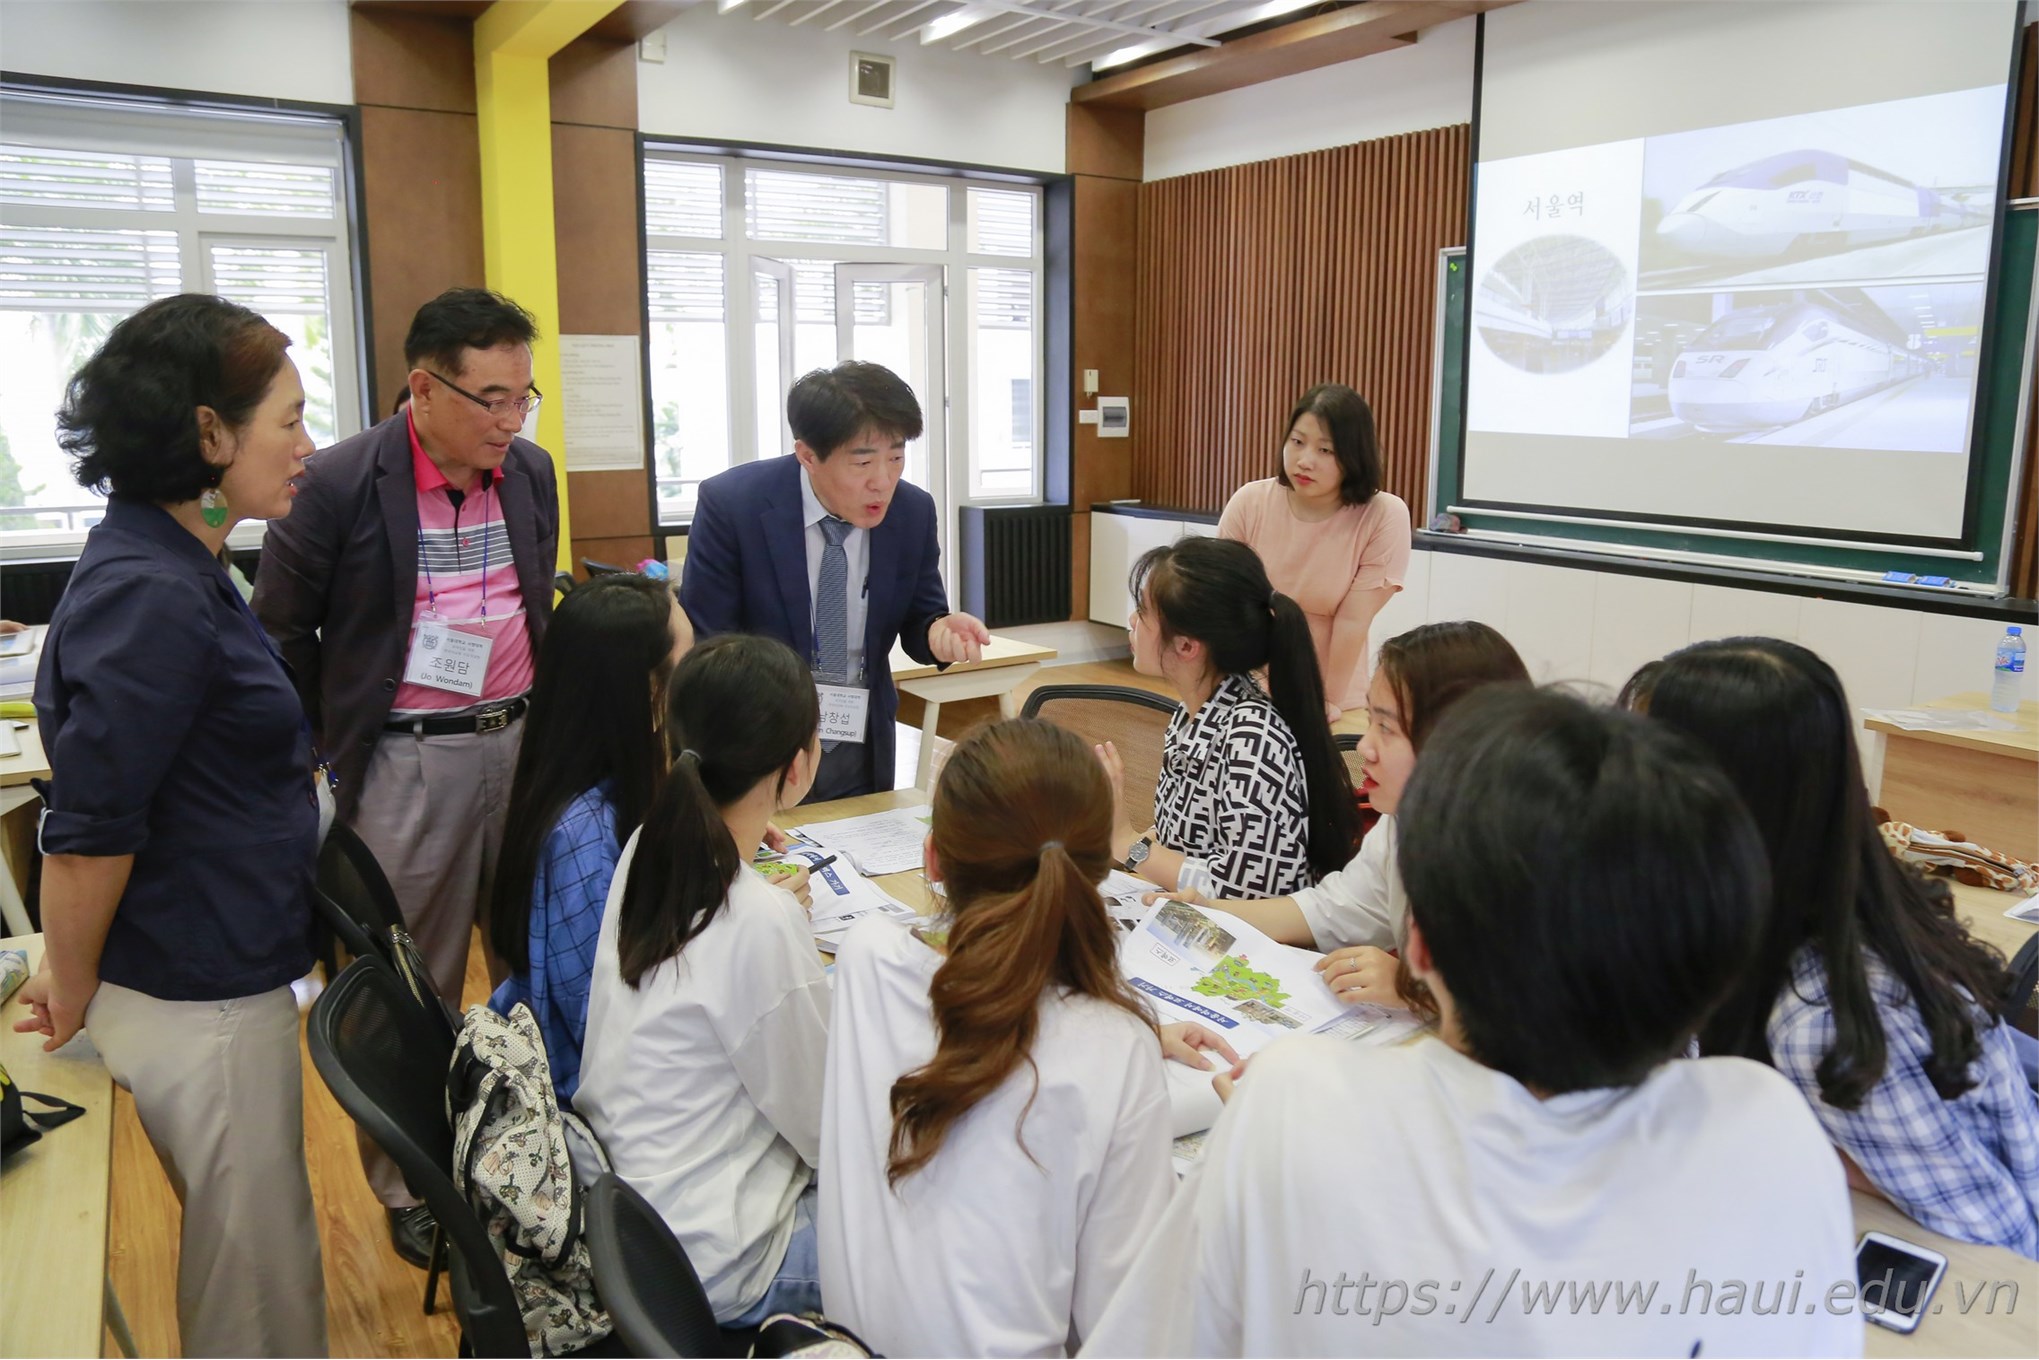 Giao lưu ngôn ngữ tiếng Hàn với giảng viên và sinh viên trường Đại học quốc gia Seoul - Hàn Quốc